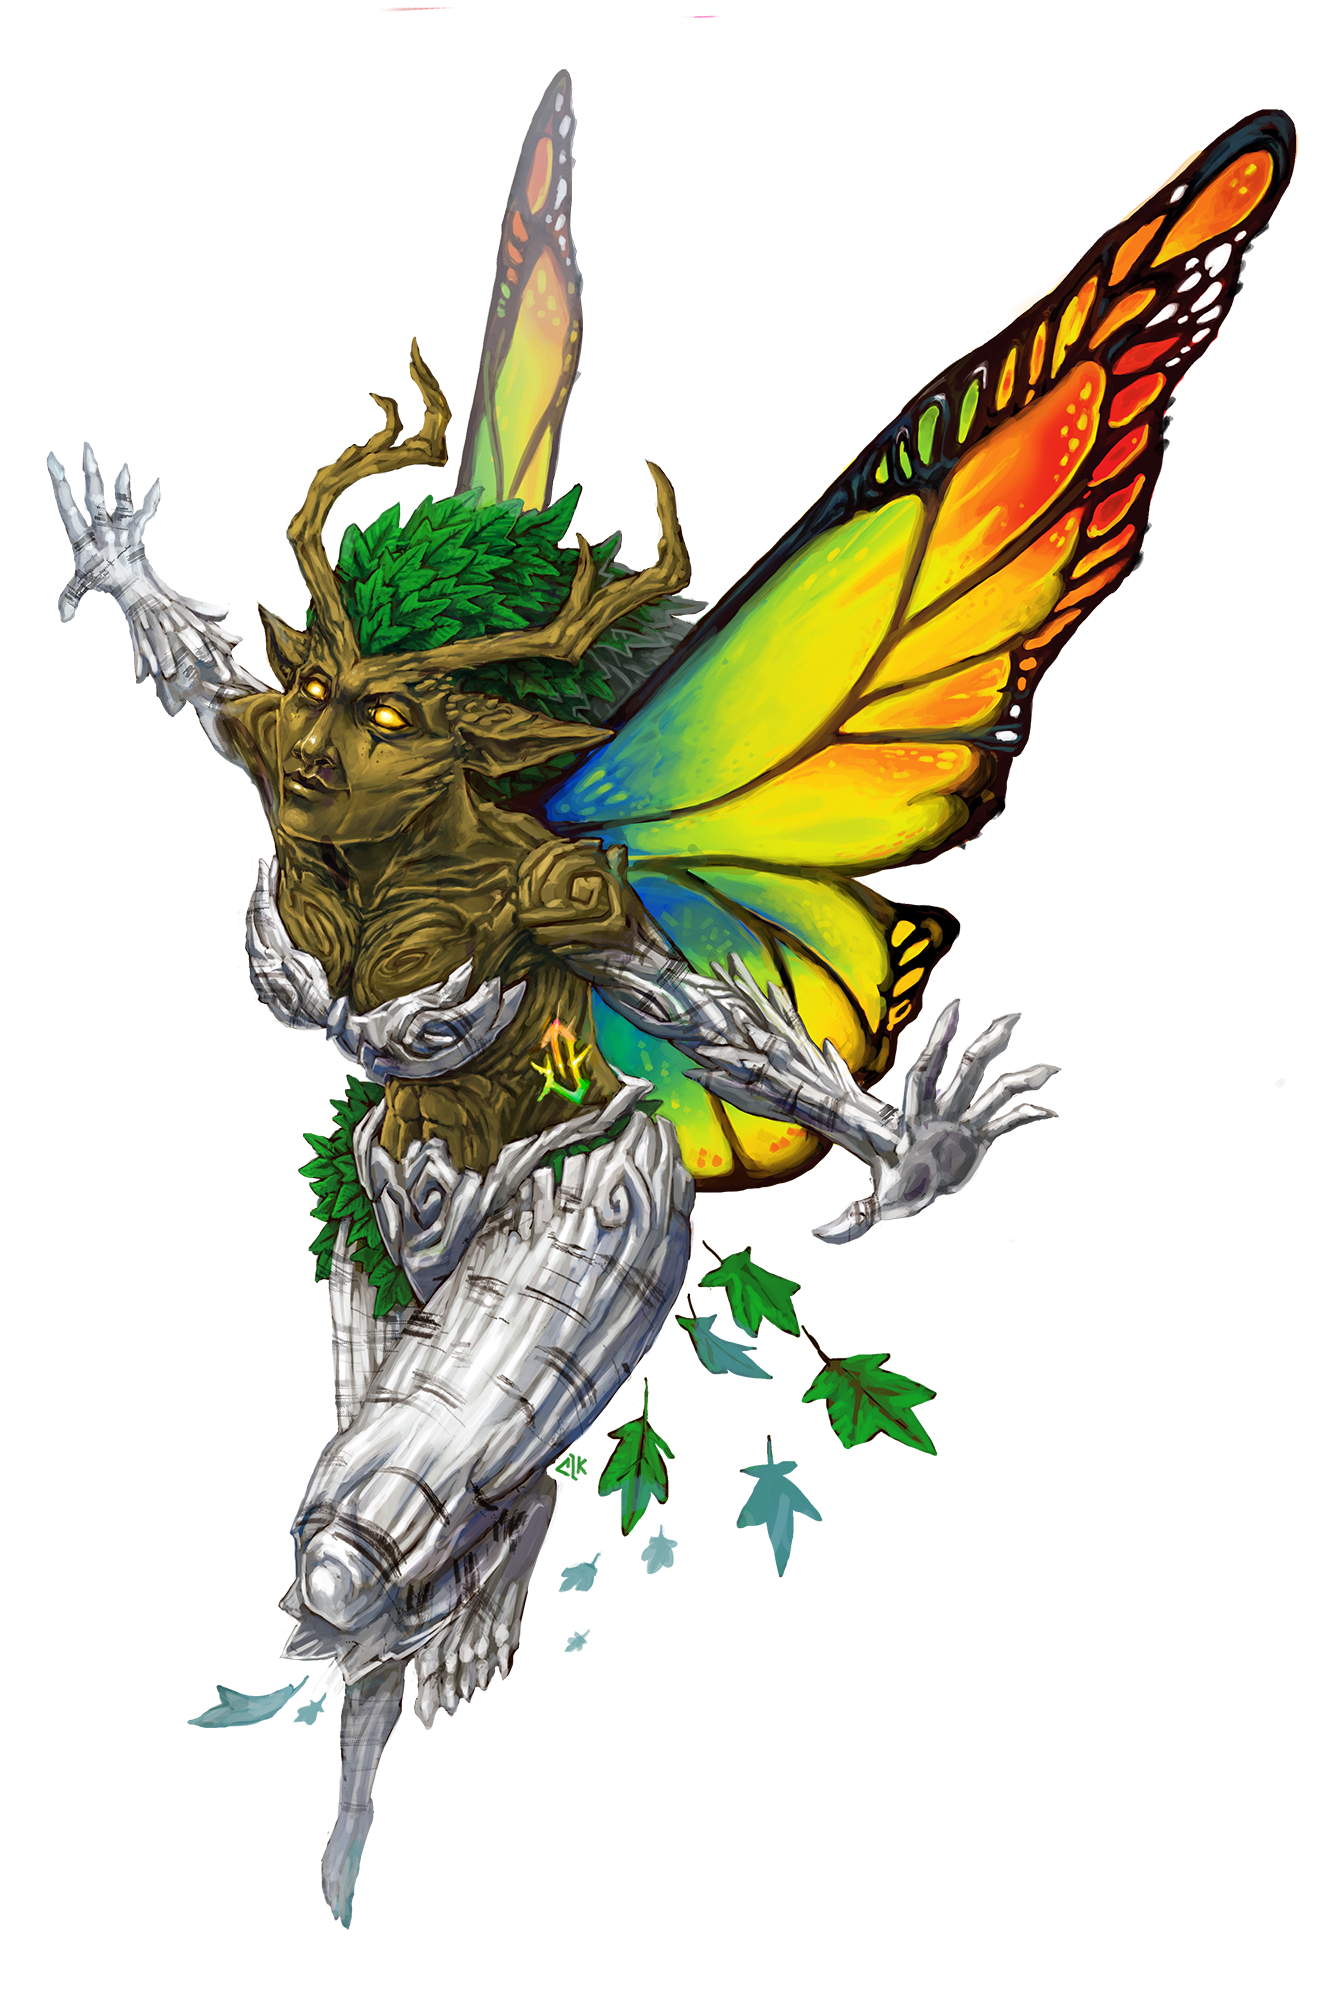 Eidolon fey, a sprite-like eidolon with bark-like skin, leafy hair, and butterfly wings